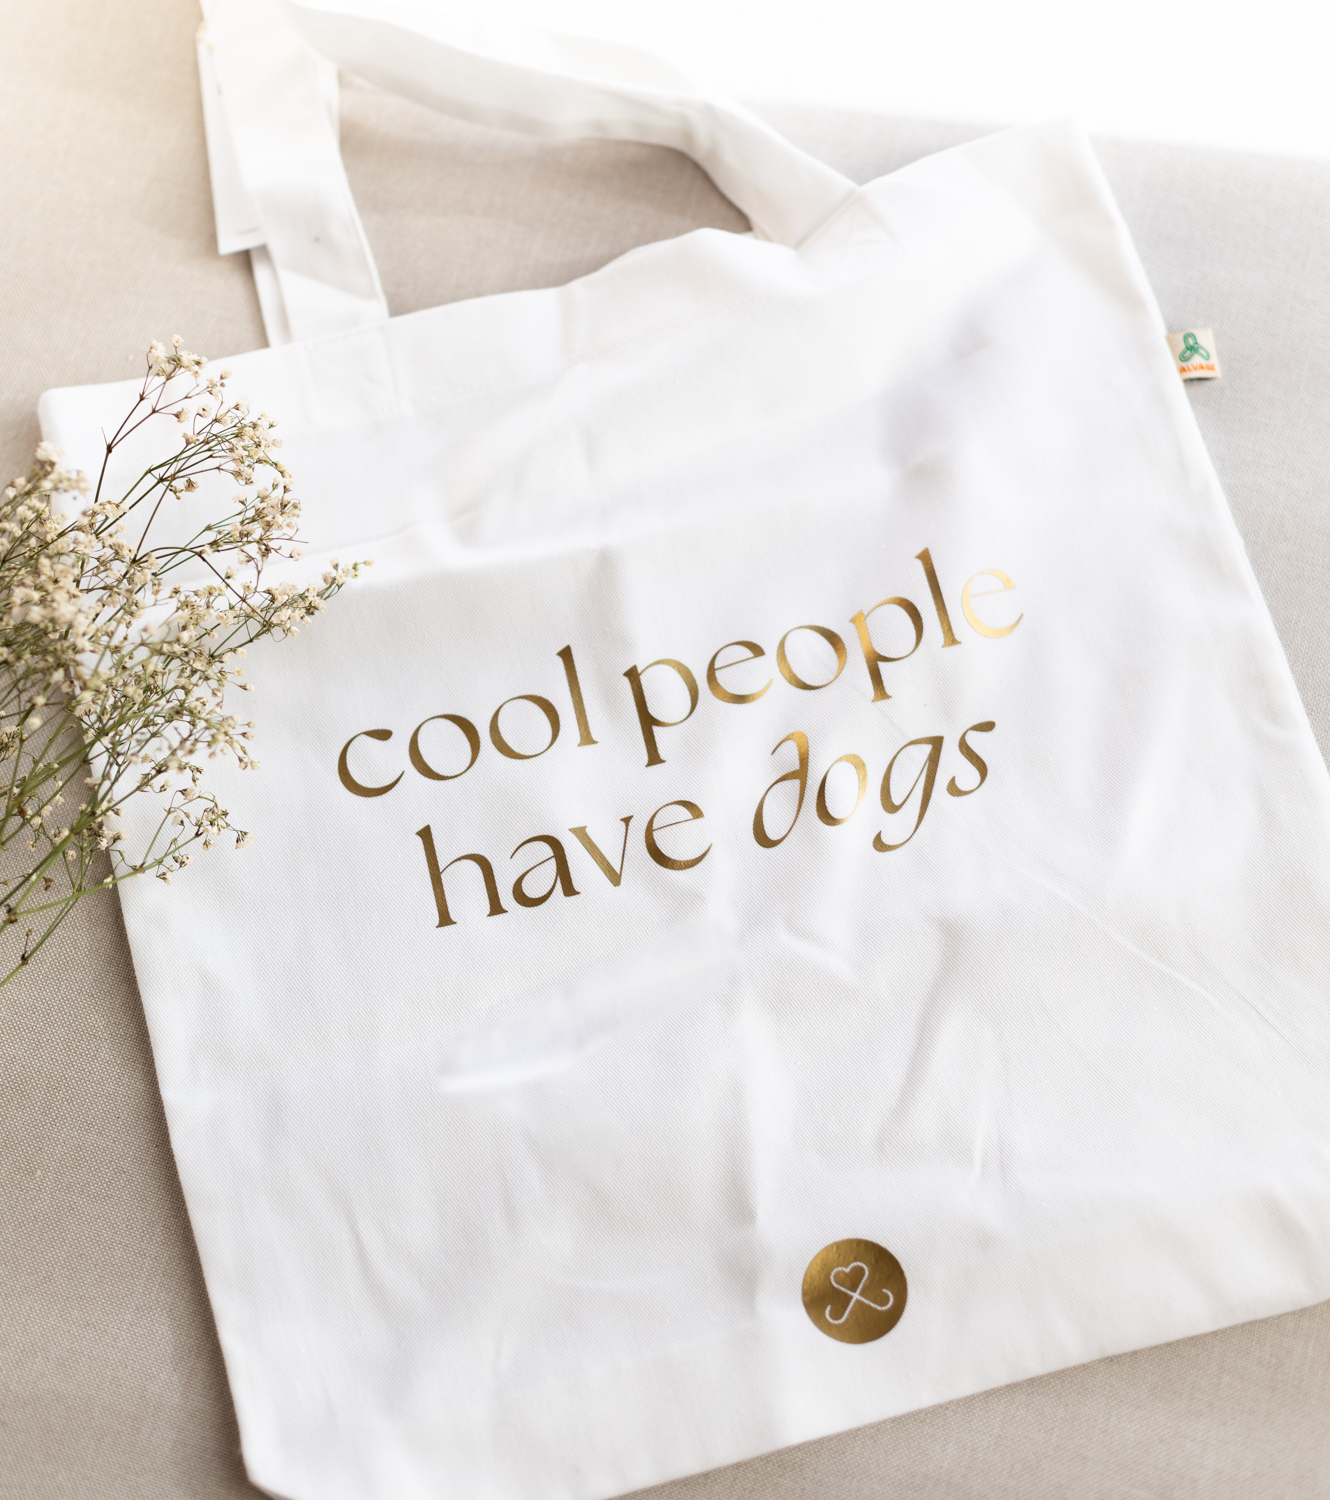 Ansicht von weisser Tasche mit goldene Schriftzug cool people have dogs